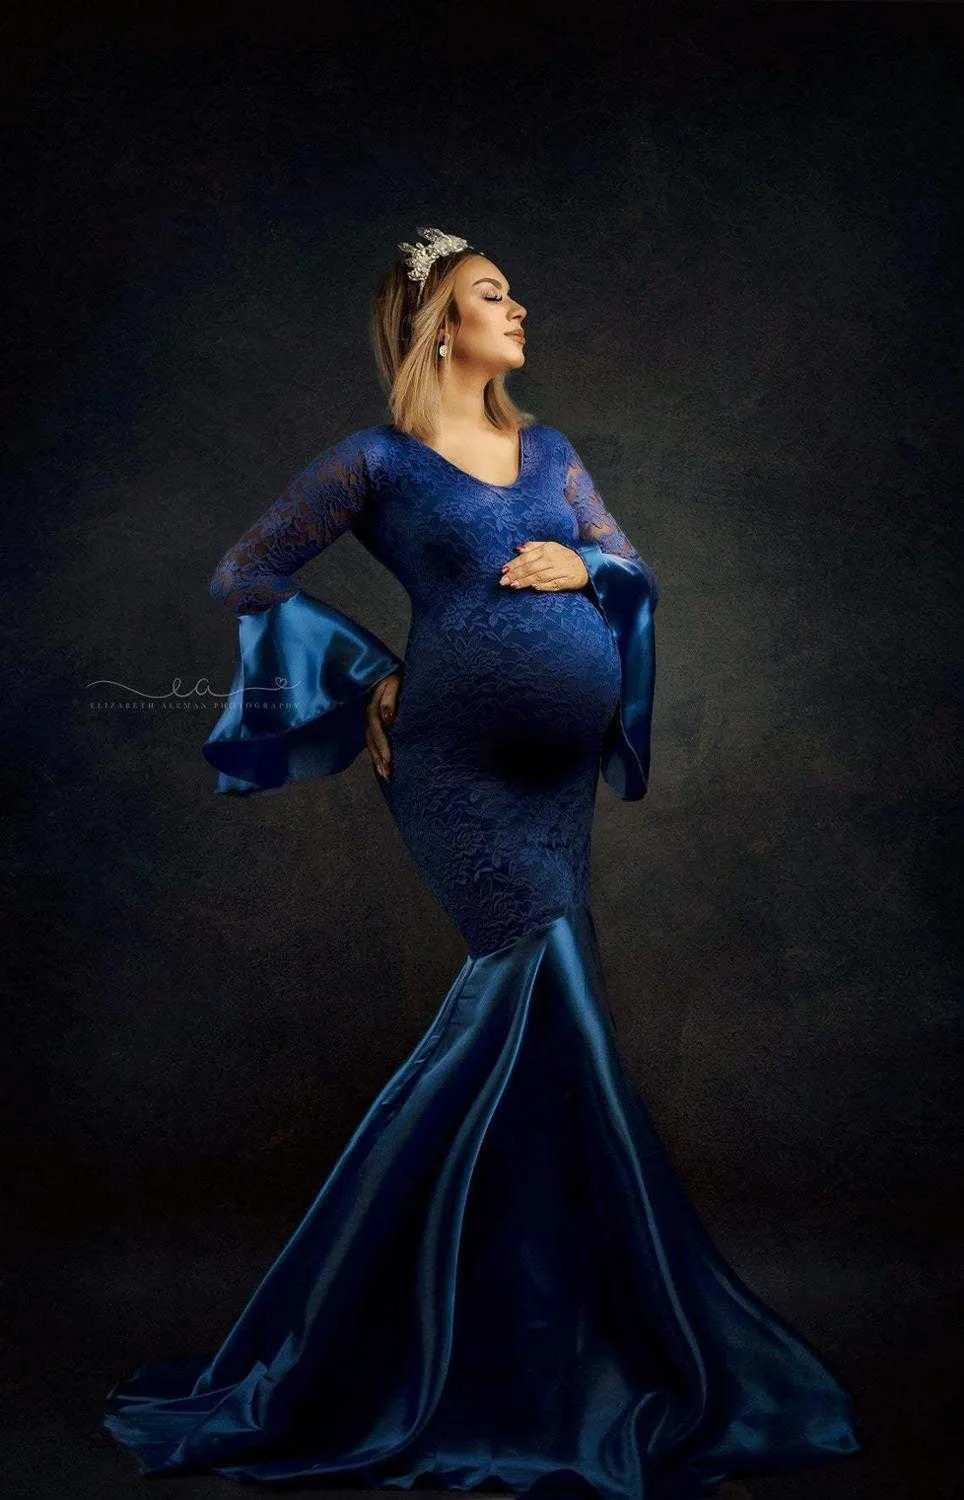 Элегантные кружевные платья для беременных для фотосъемки реквизит сексуальное беременность платье для фотографии длинные беременные женщины Maxi платье одежда Q0713